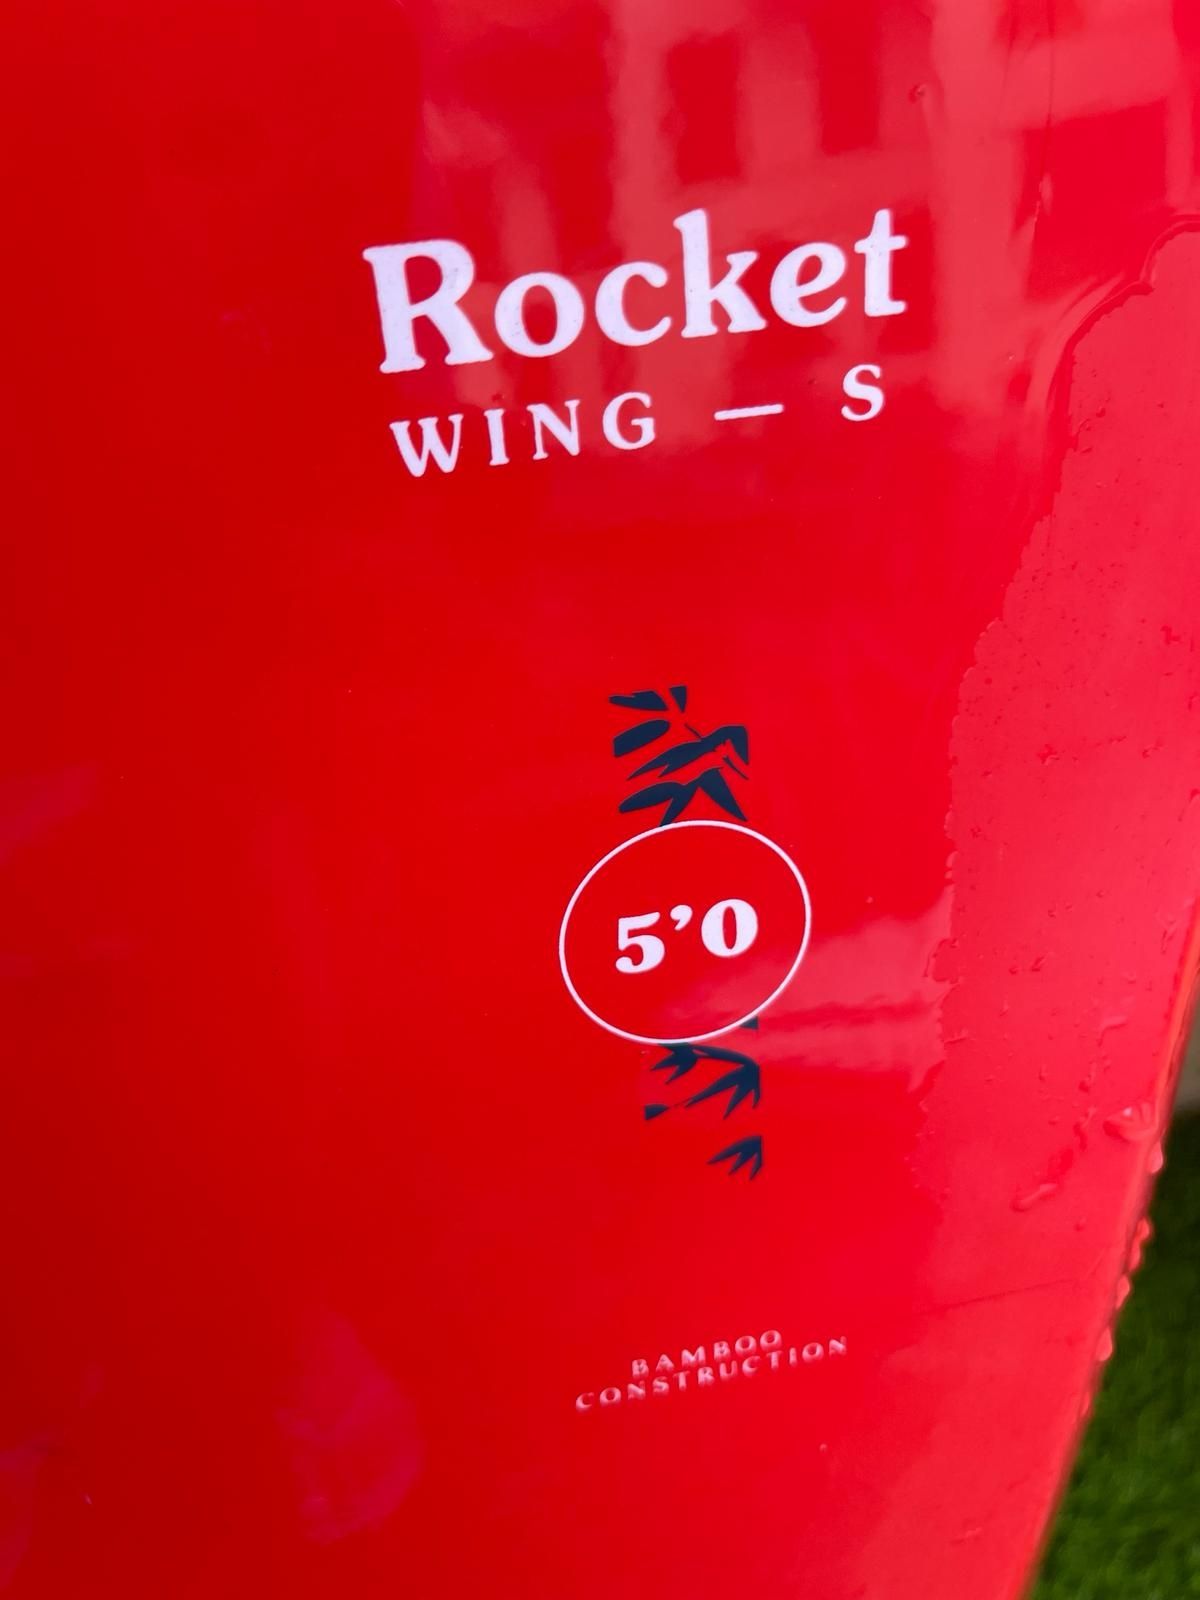 Deska wingfoil 54l 5'0 F-one Rocket Wing S v3 
Parametry: 5’0 /54l